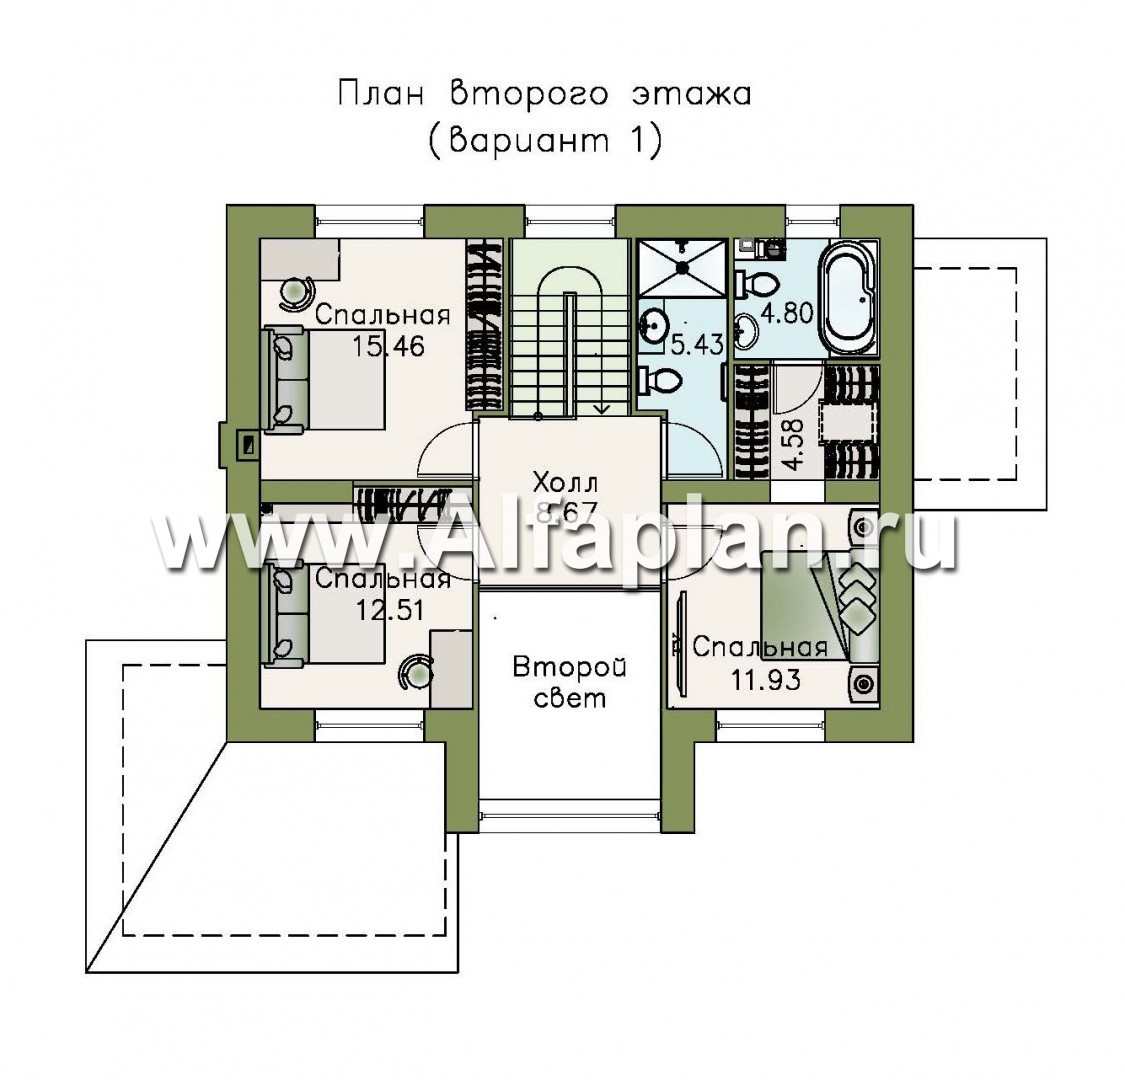 Проекты домов Альфаплан - «Регата» - комфортный дом с двускатной крышей - план проекта №2